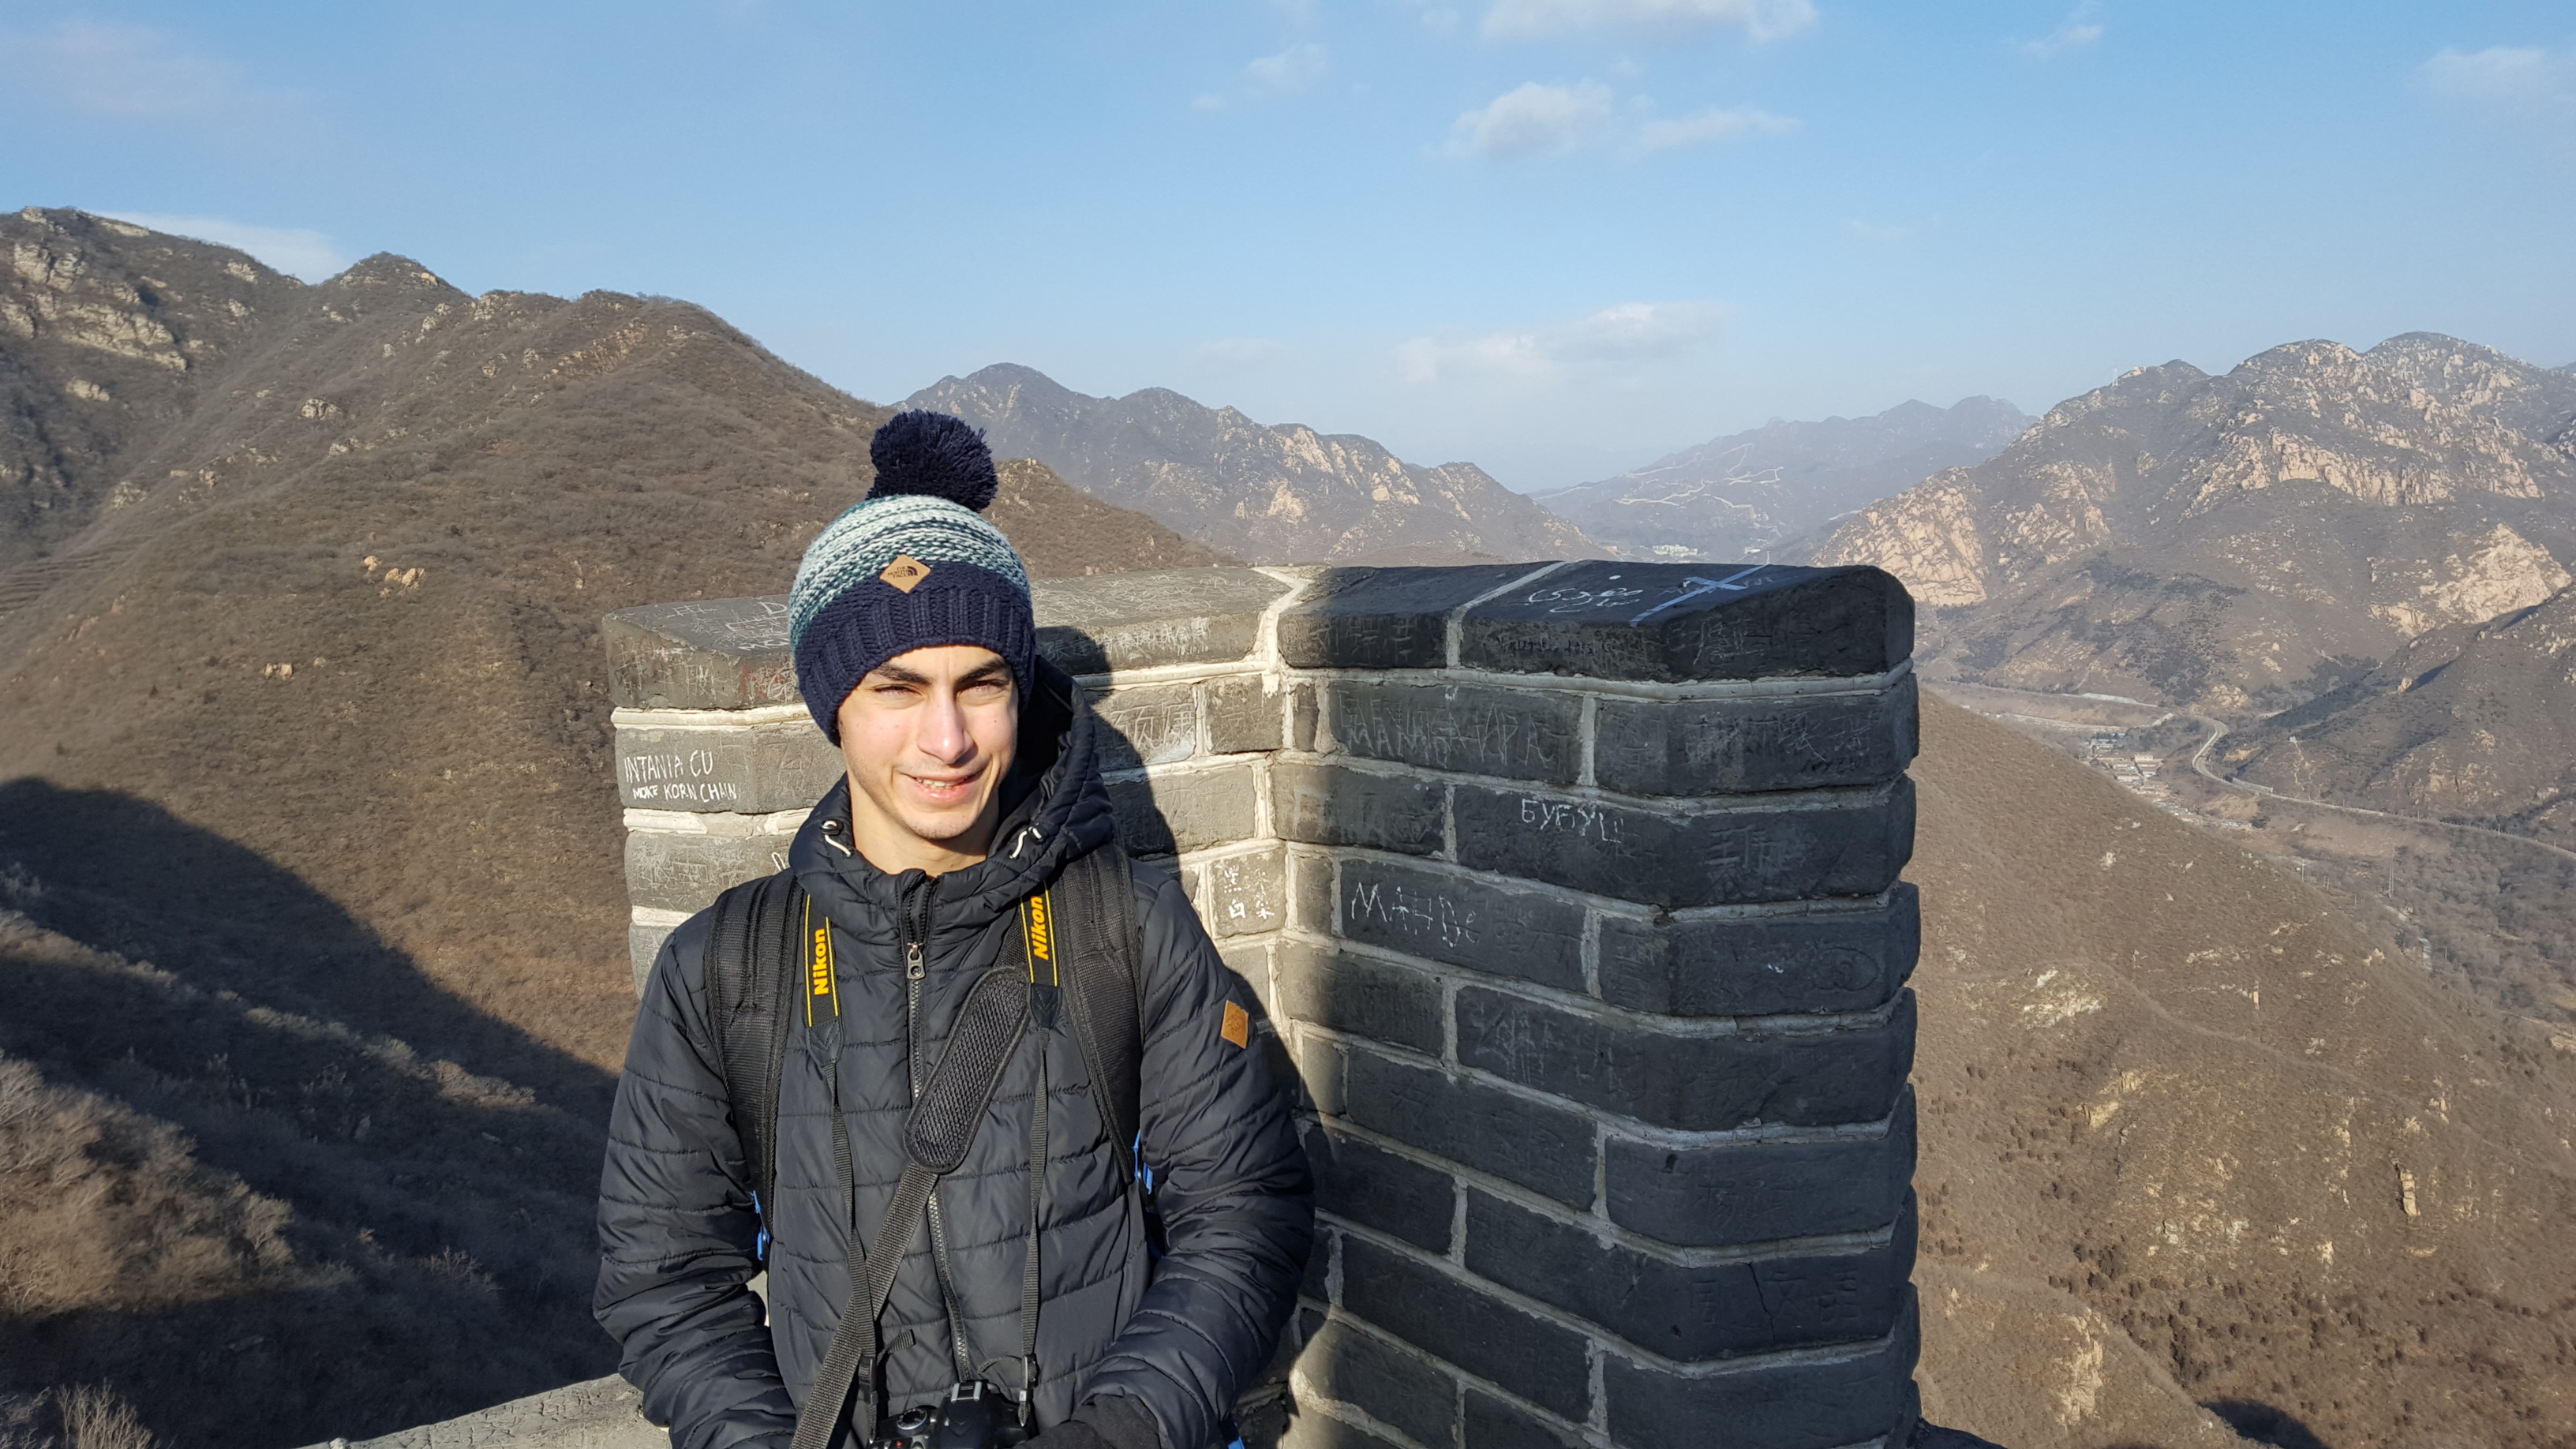 Omar at the Great Wall of China